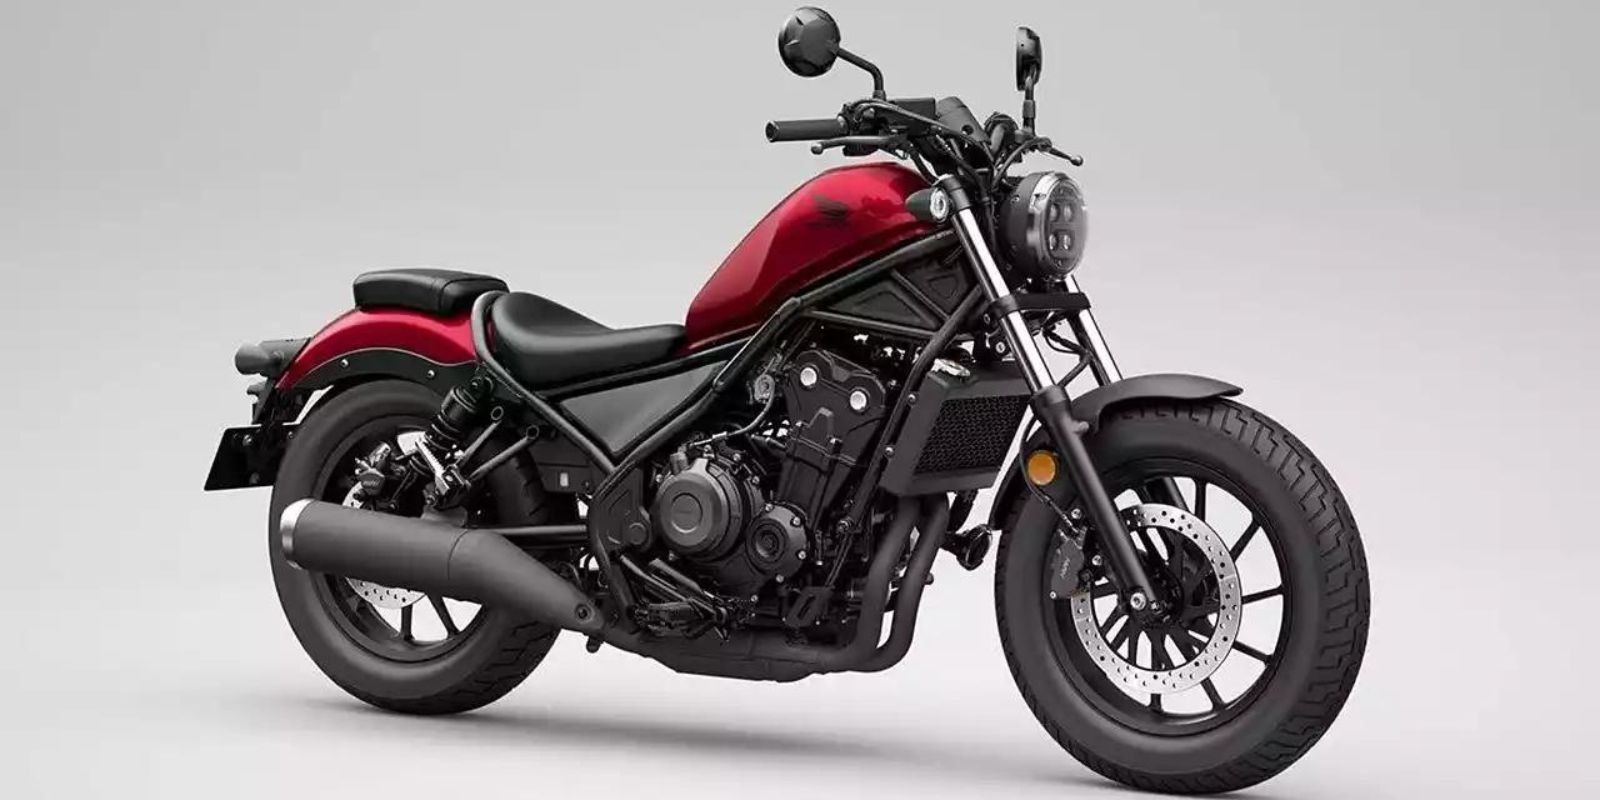 4 Upcoming 300-350 cc Bikes In India: Royal Enfield, TVS, Honda